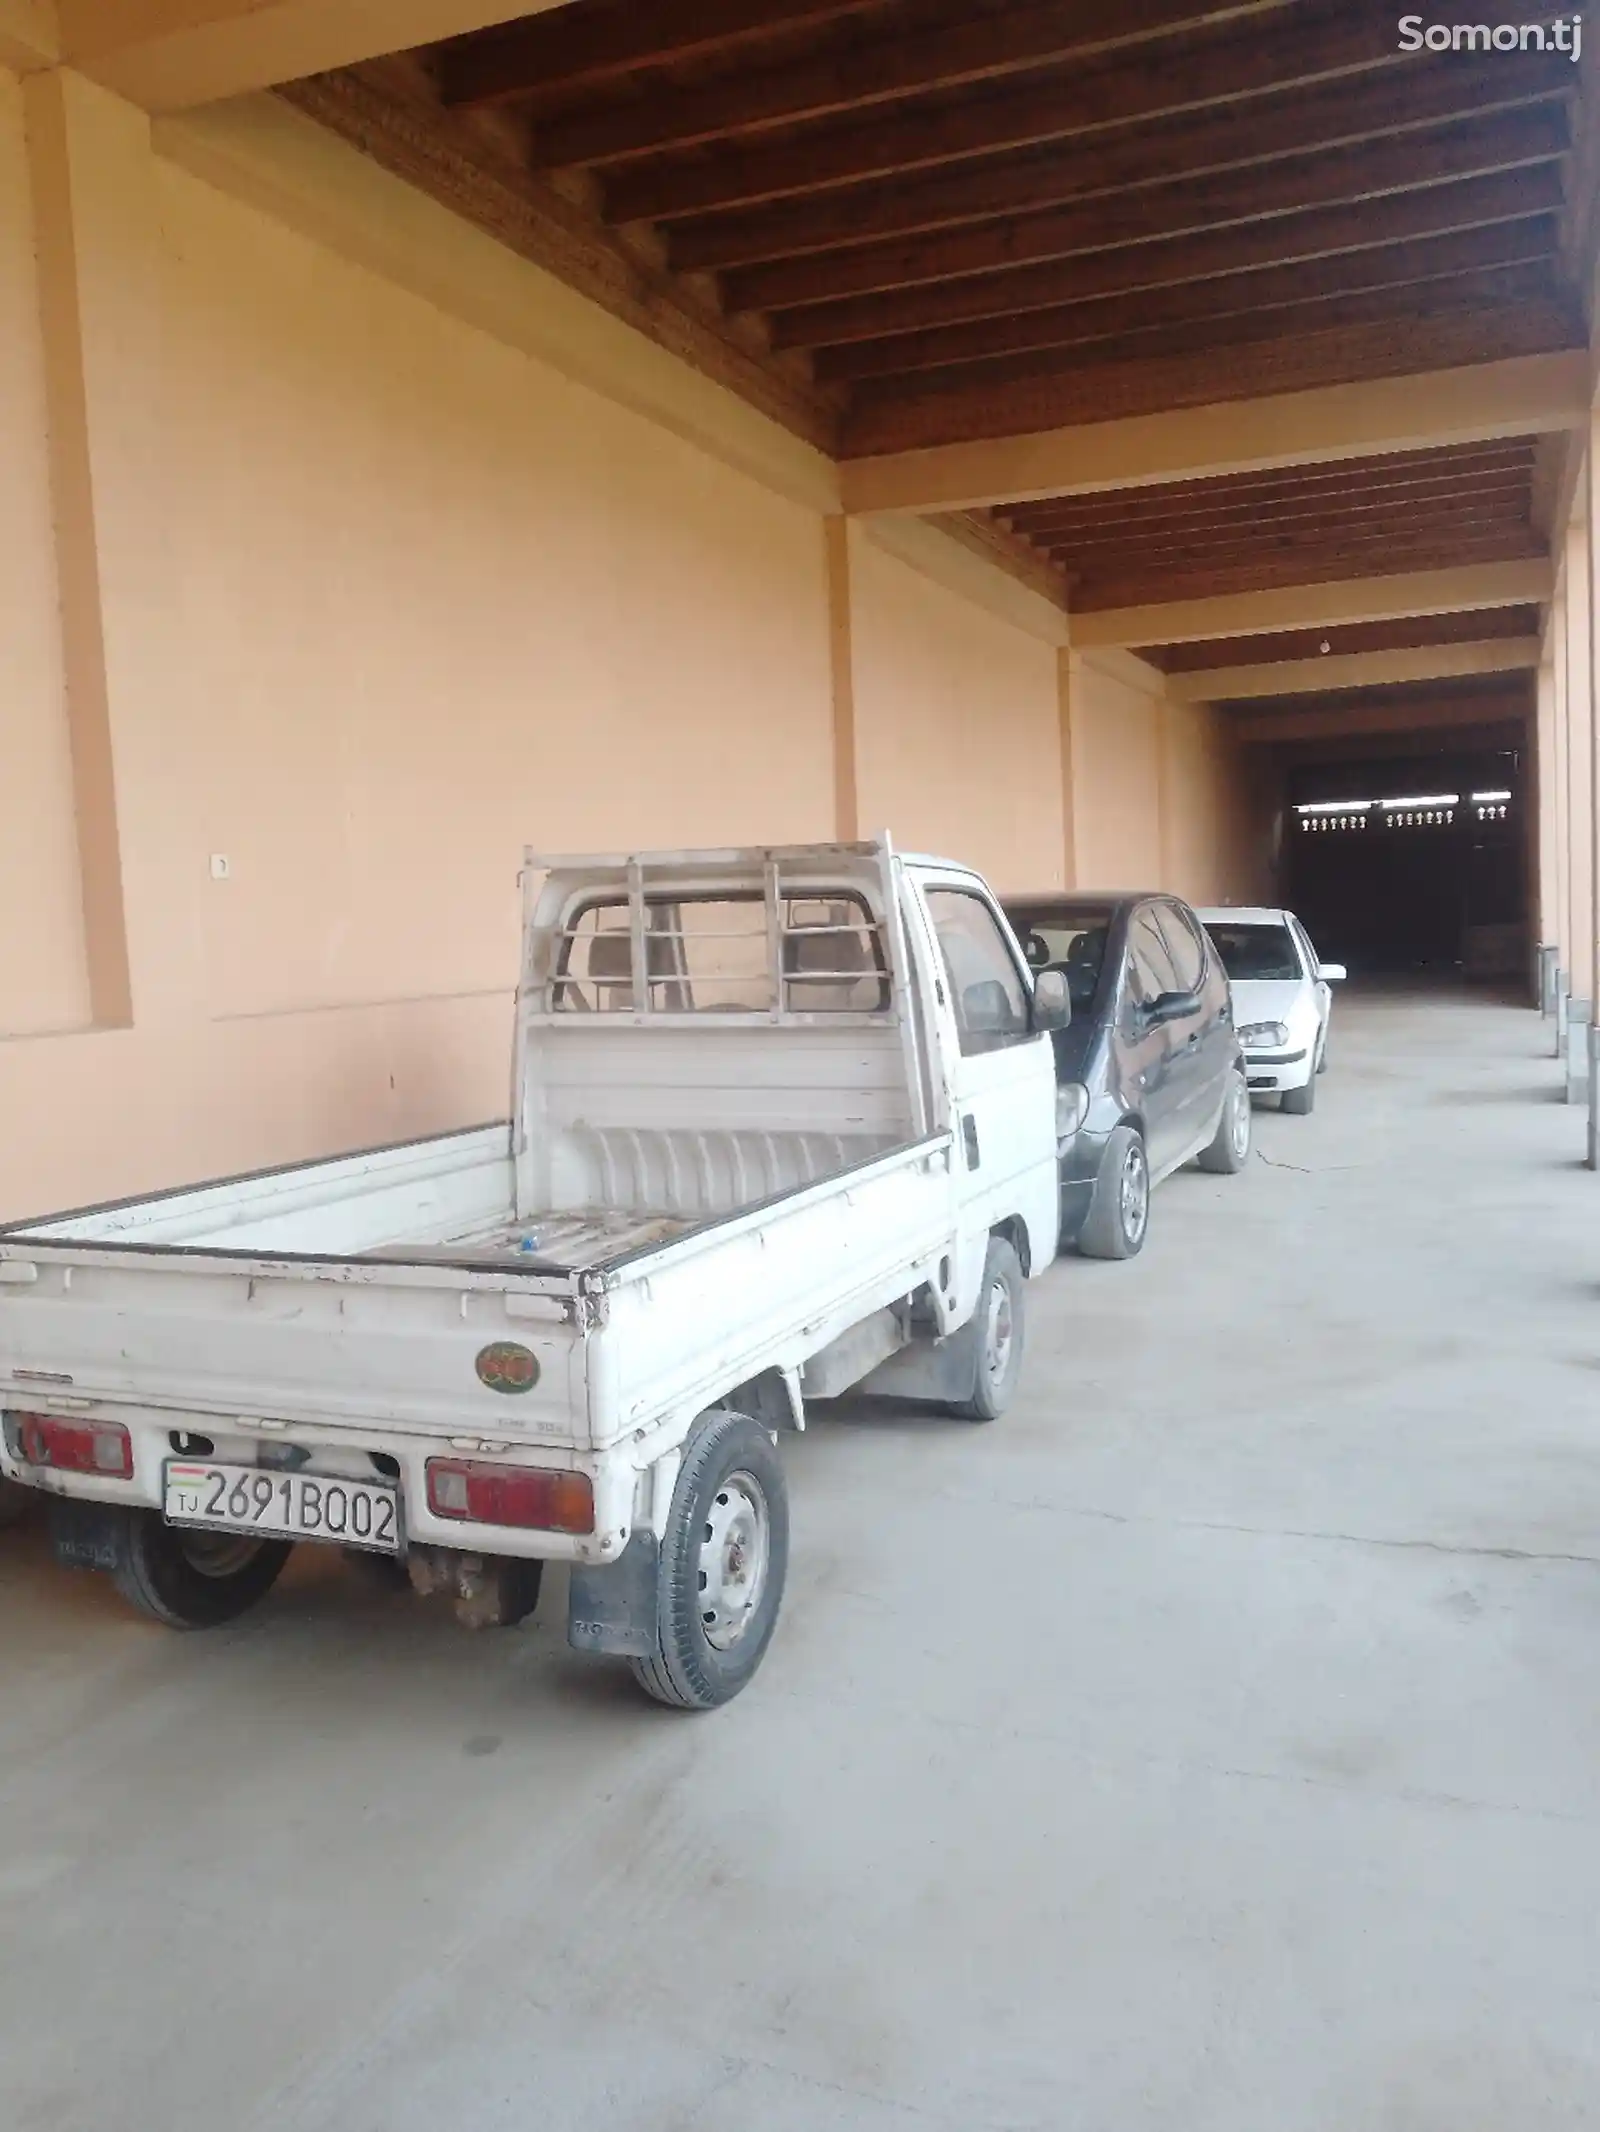 Бортовой автомобиль Daewoo labo, 1989-4